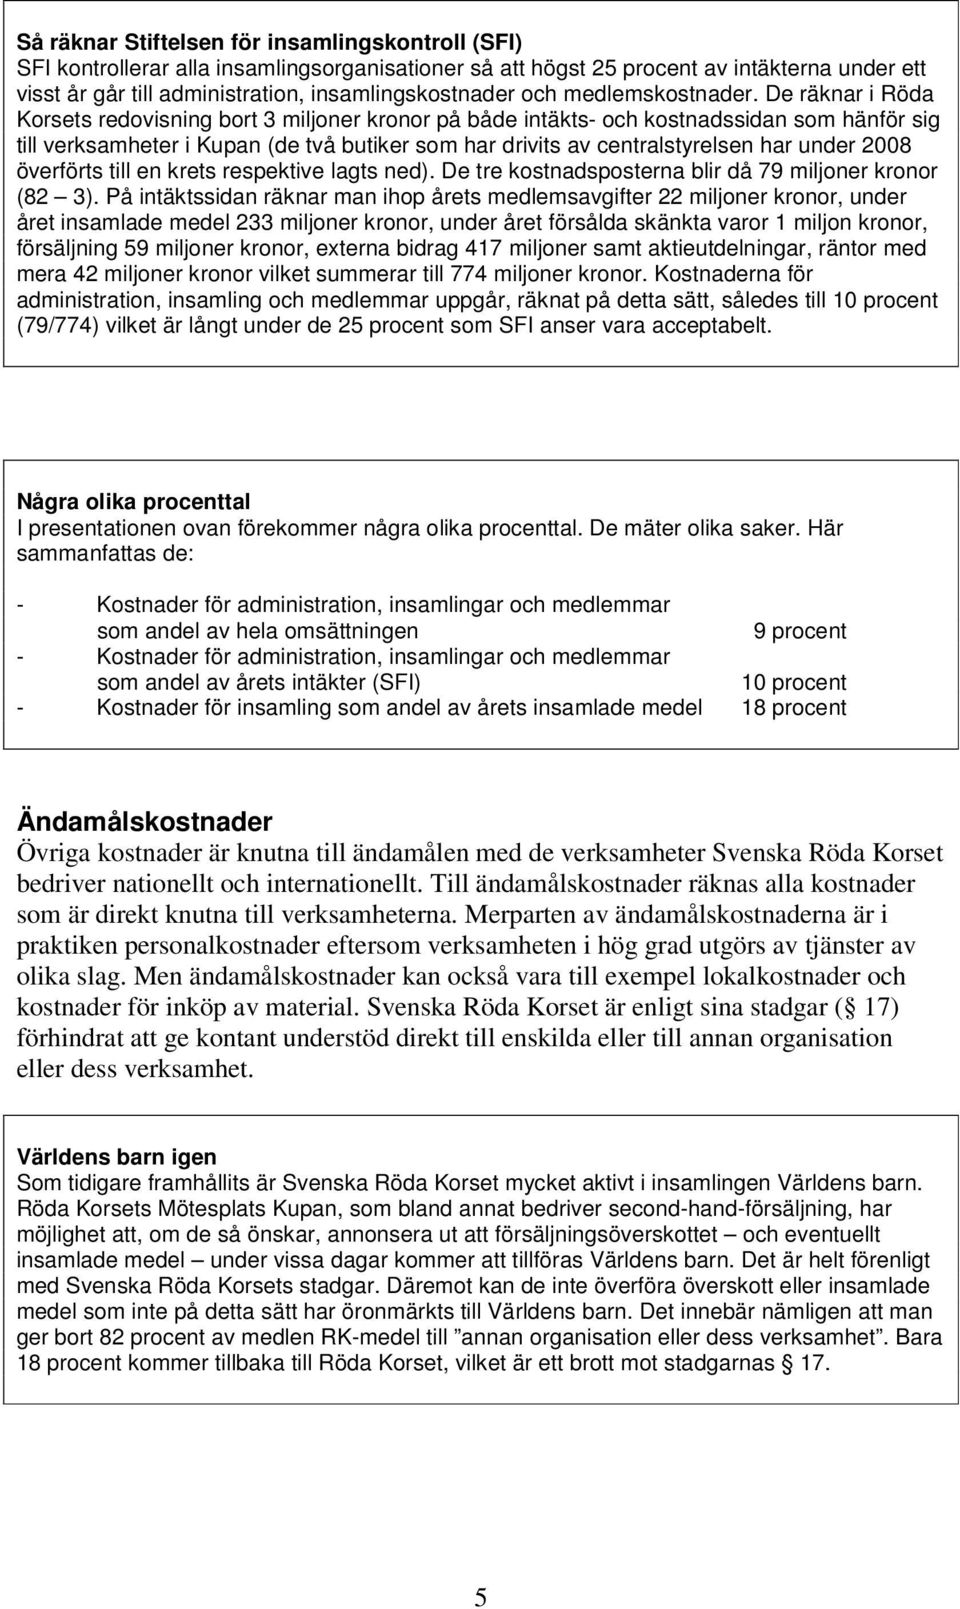 HUR SER PENGAFLÖDENA UT I SVENSKA RÖDA KORSET? - PDF Free Download